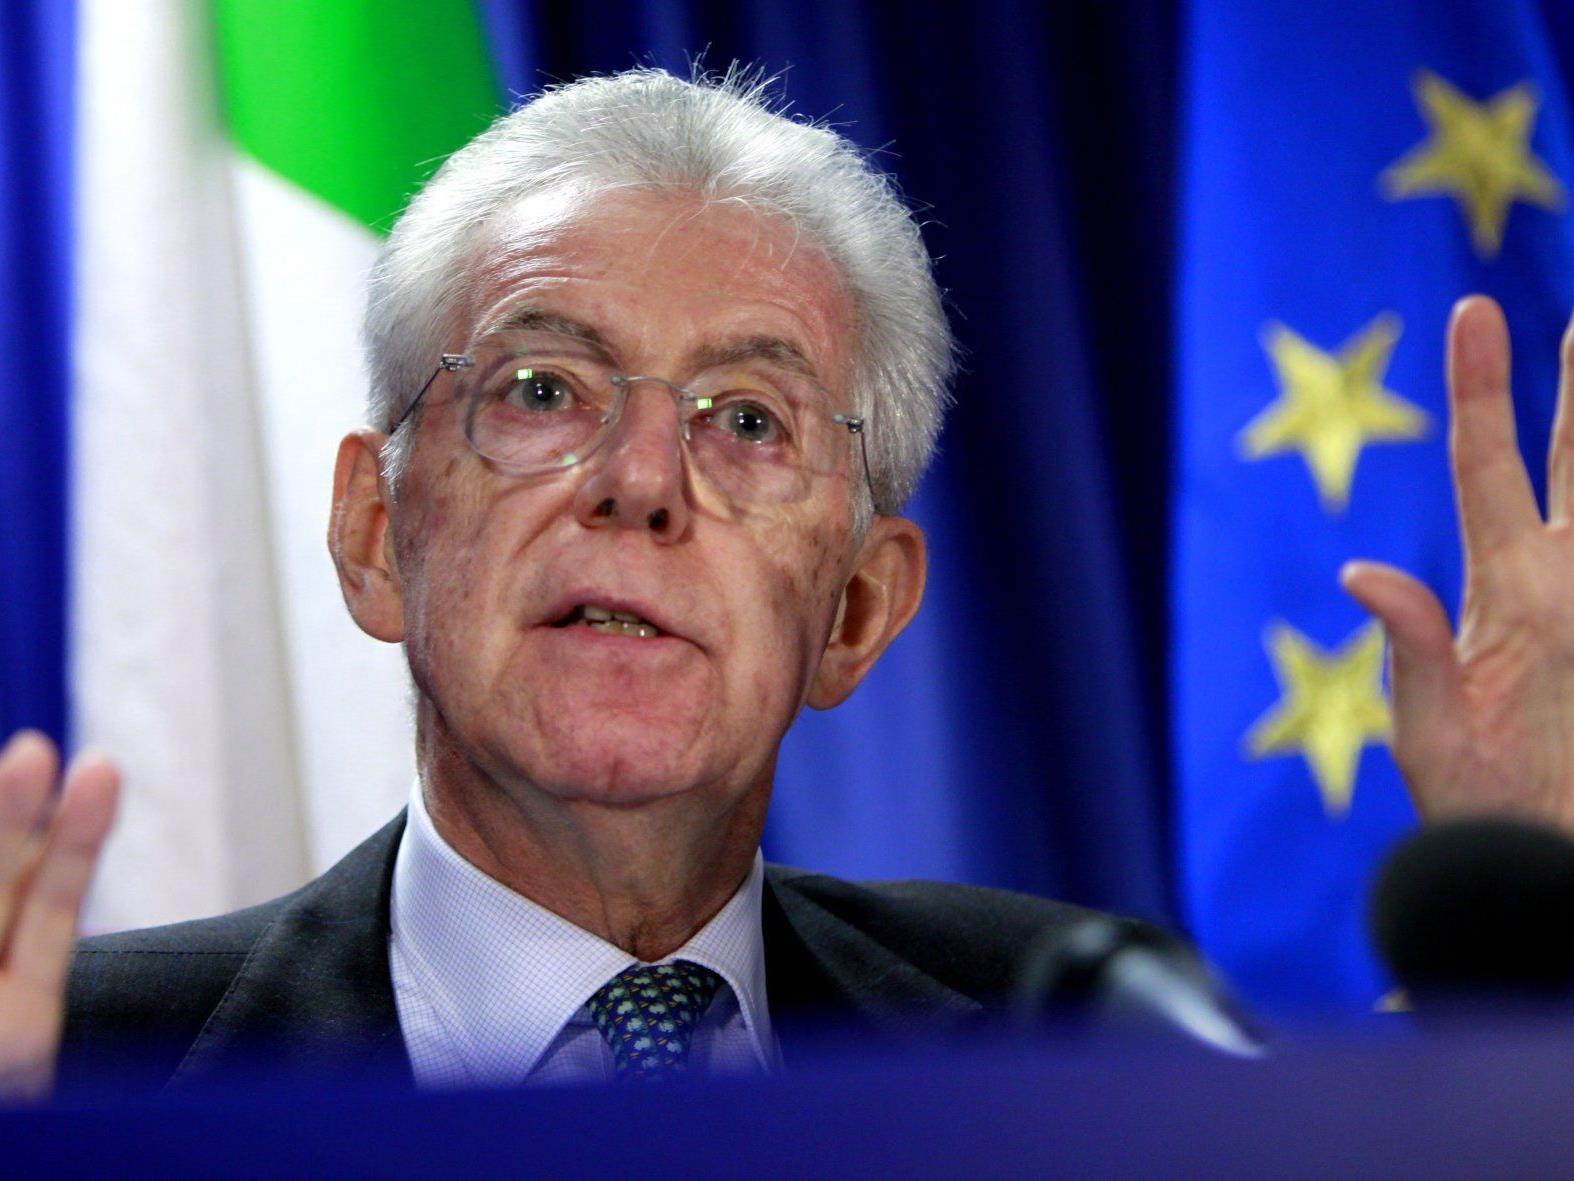 Monti: "Wir haben im Eiltempo gehandelt, um das bestmögliche Maßnahmenpaket zu entwerfen".